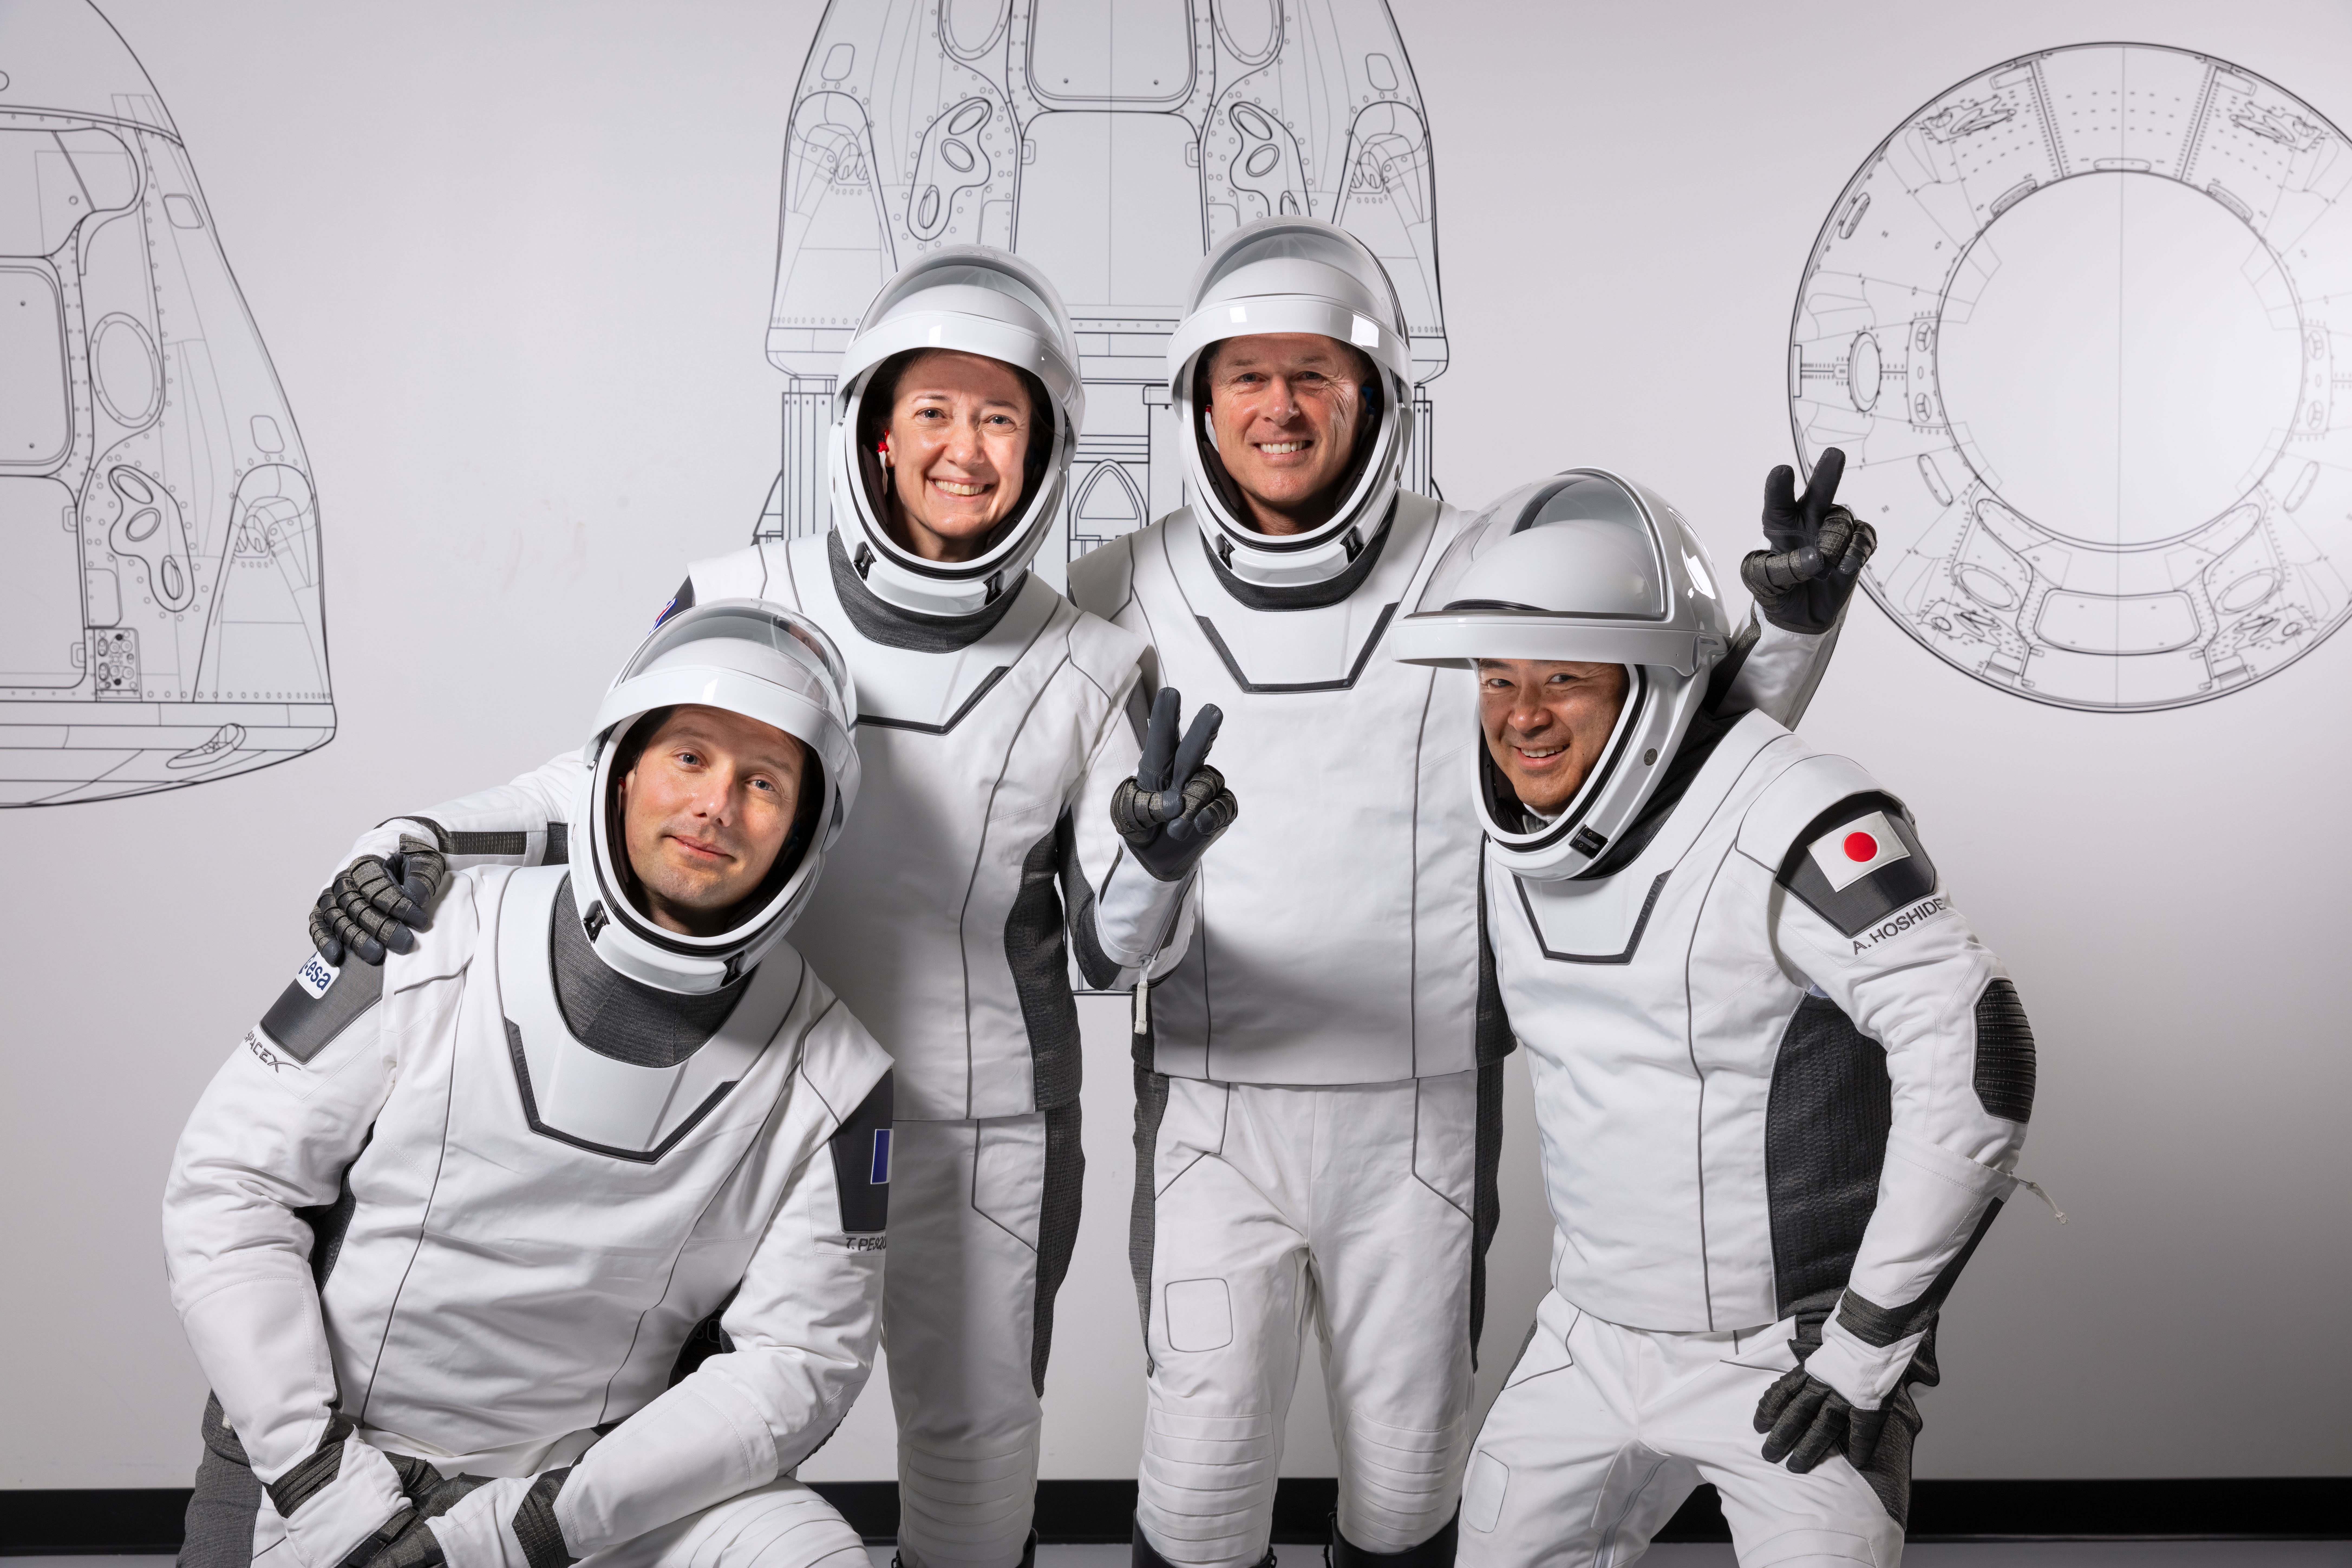 Załoga misji Crew-2 podczas treningów w siedzibie SpaceX, od lewej: Thomas Pesquet, Megan McArthur, Shane Kimbrough, Akihiko Hoshide (Źródło: SpaceX)